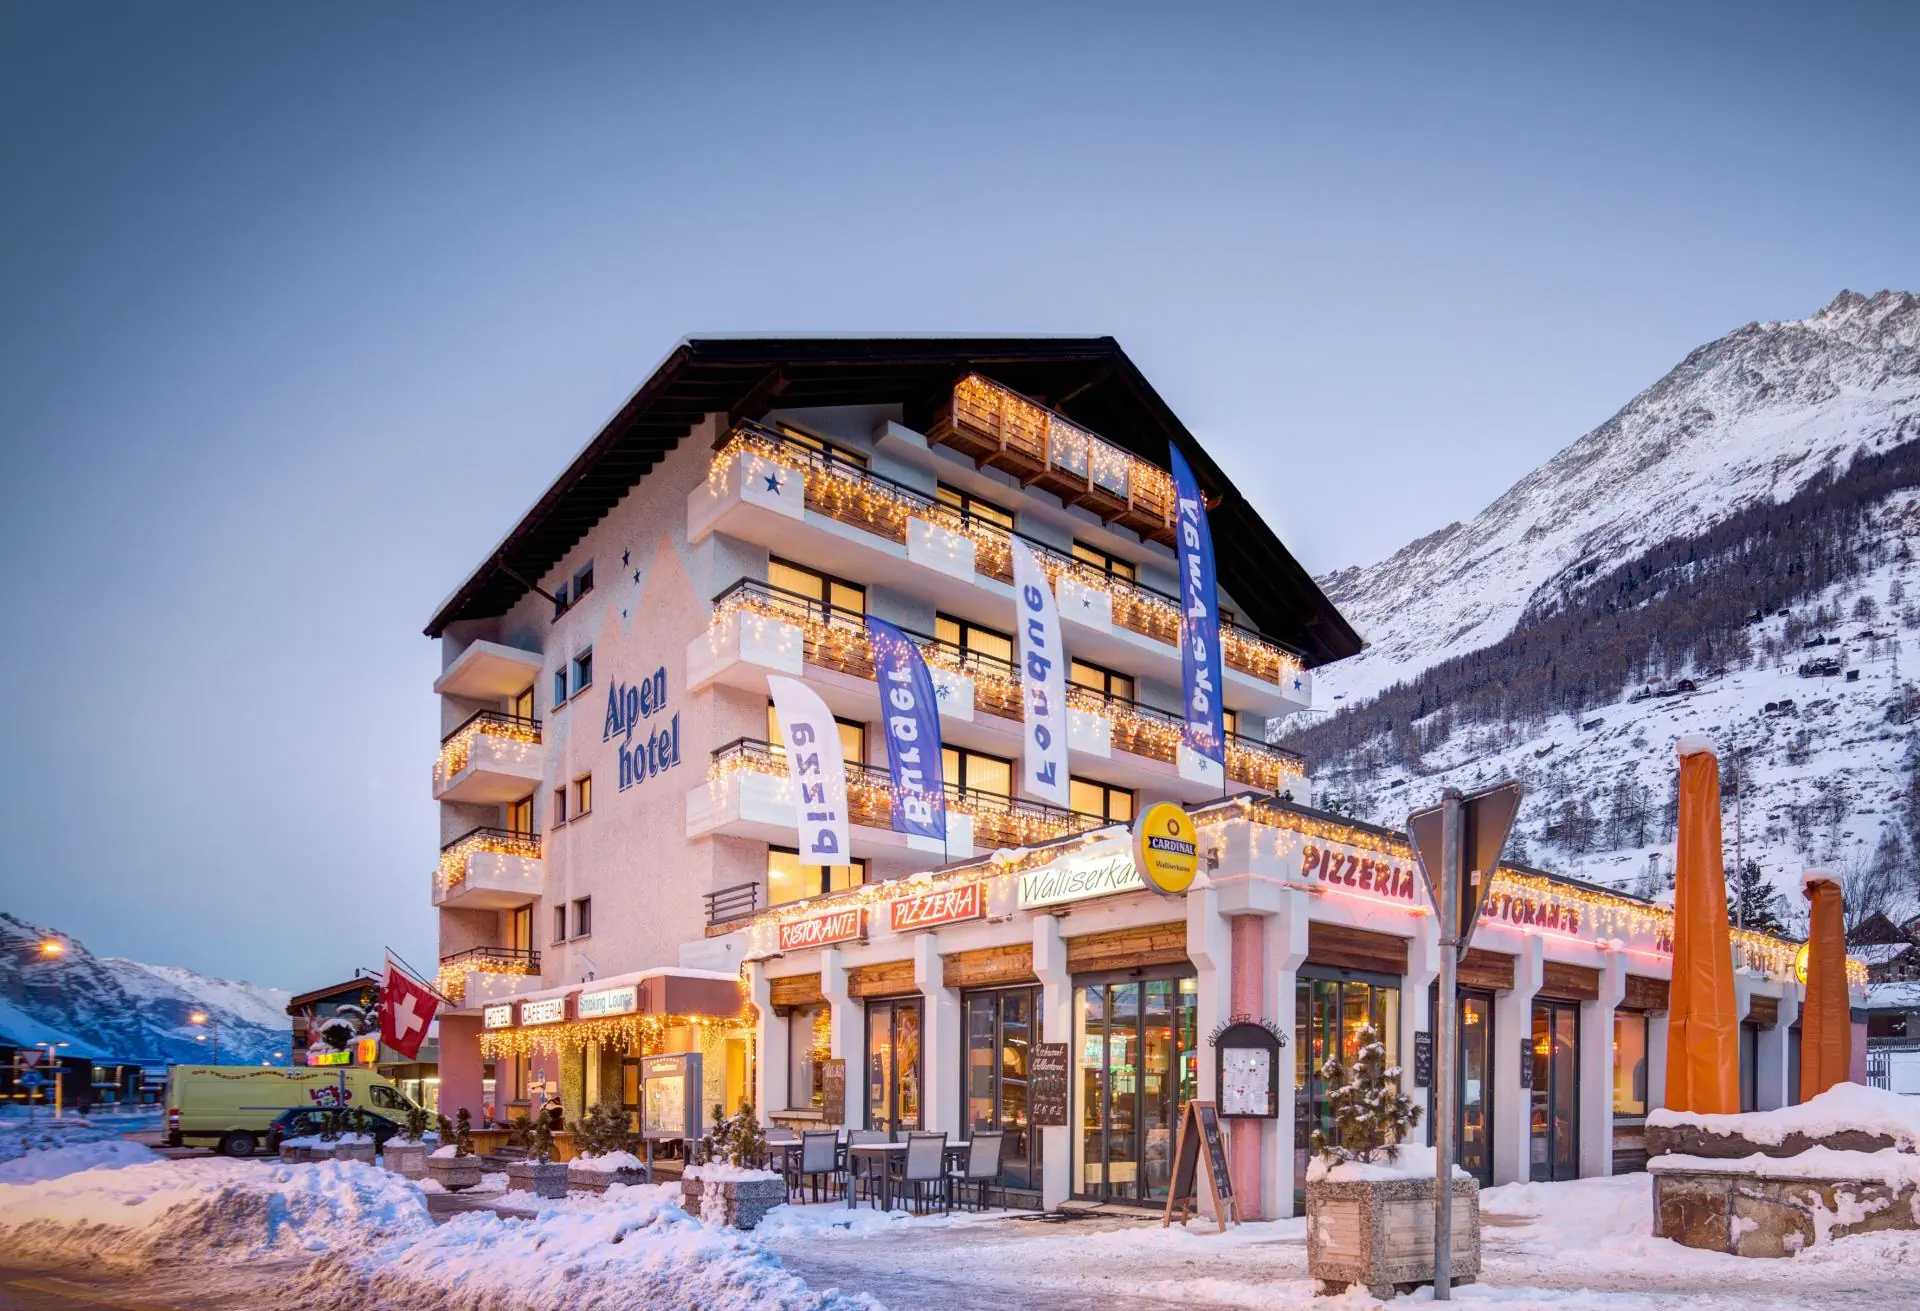 Szwajcaria Wallis Tasch Hotel Matterhorn-Inn